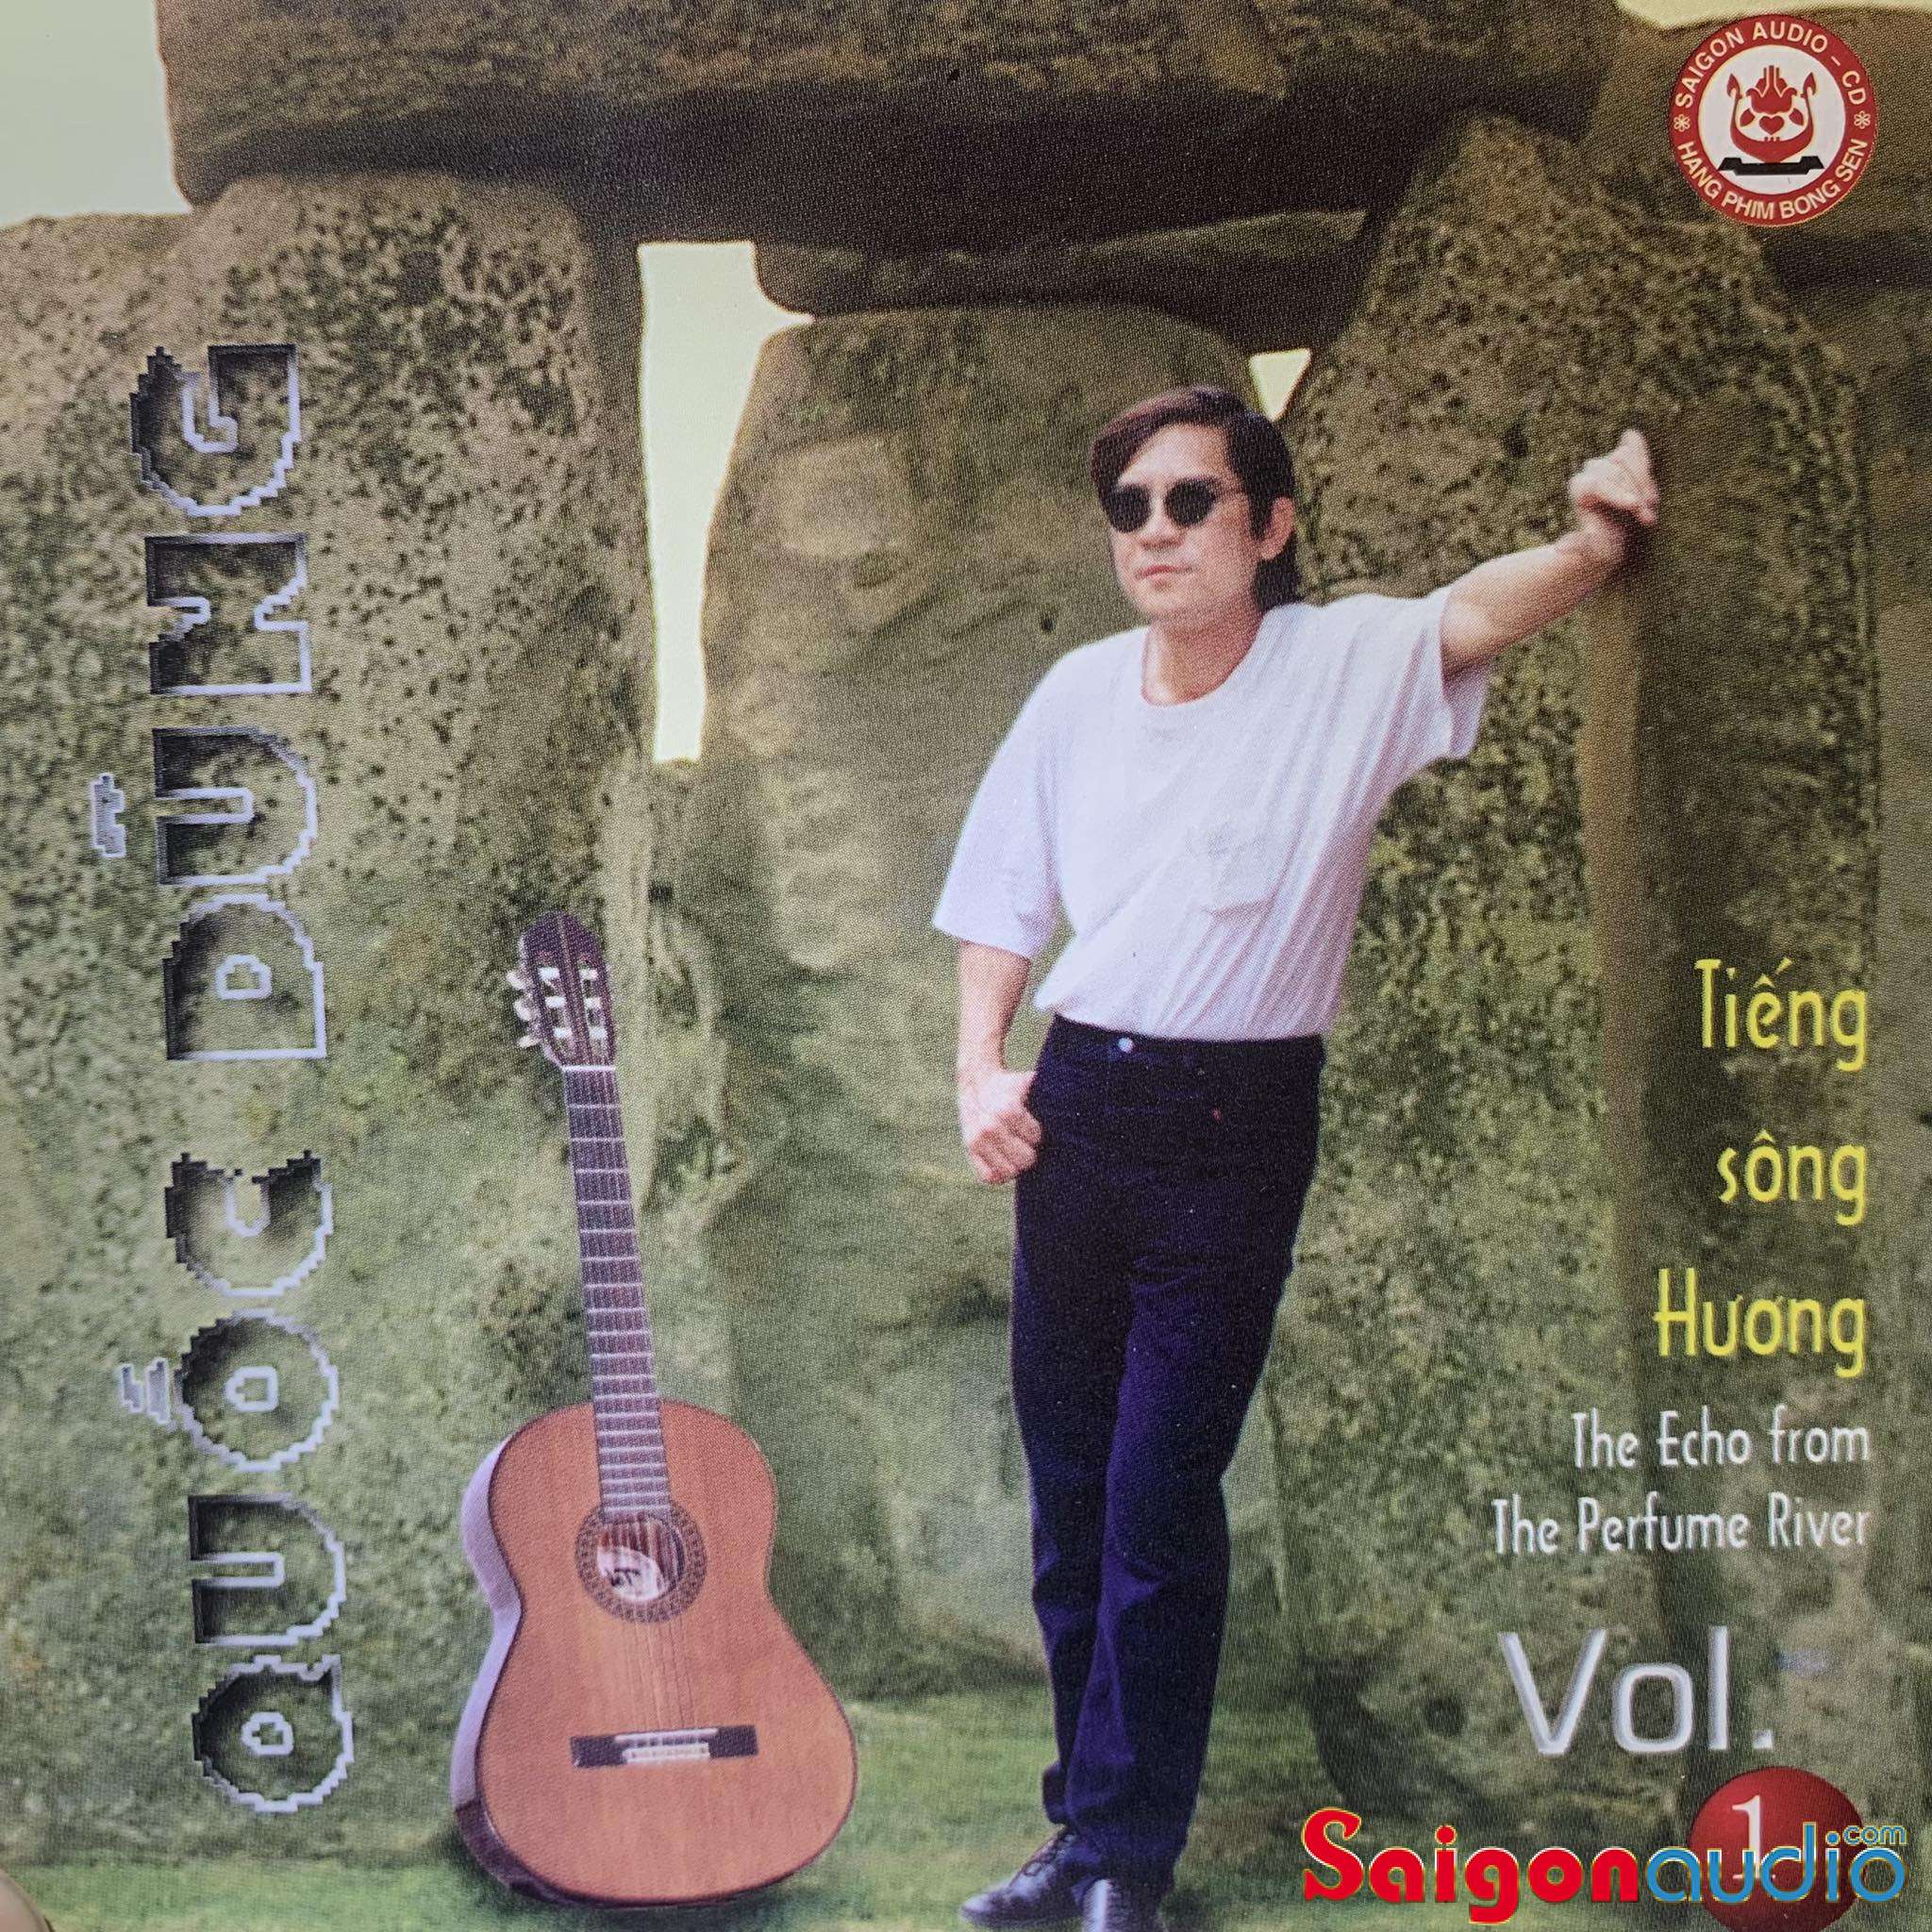 Đĩa CD gốc Hòa Tấu Quốc Dũng - Tiếng Sông Hương Vol.1 (Free ship khi mua 2 đĩa CD cùng hoặc khác loại)